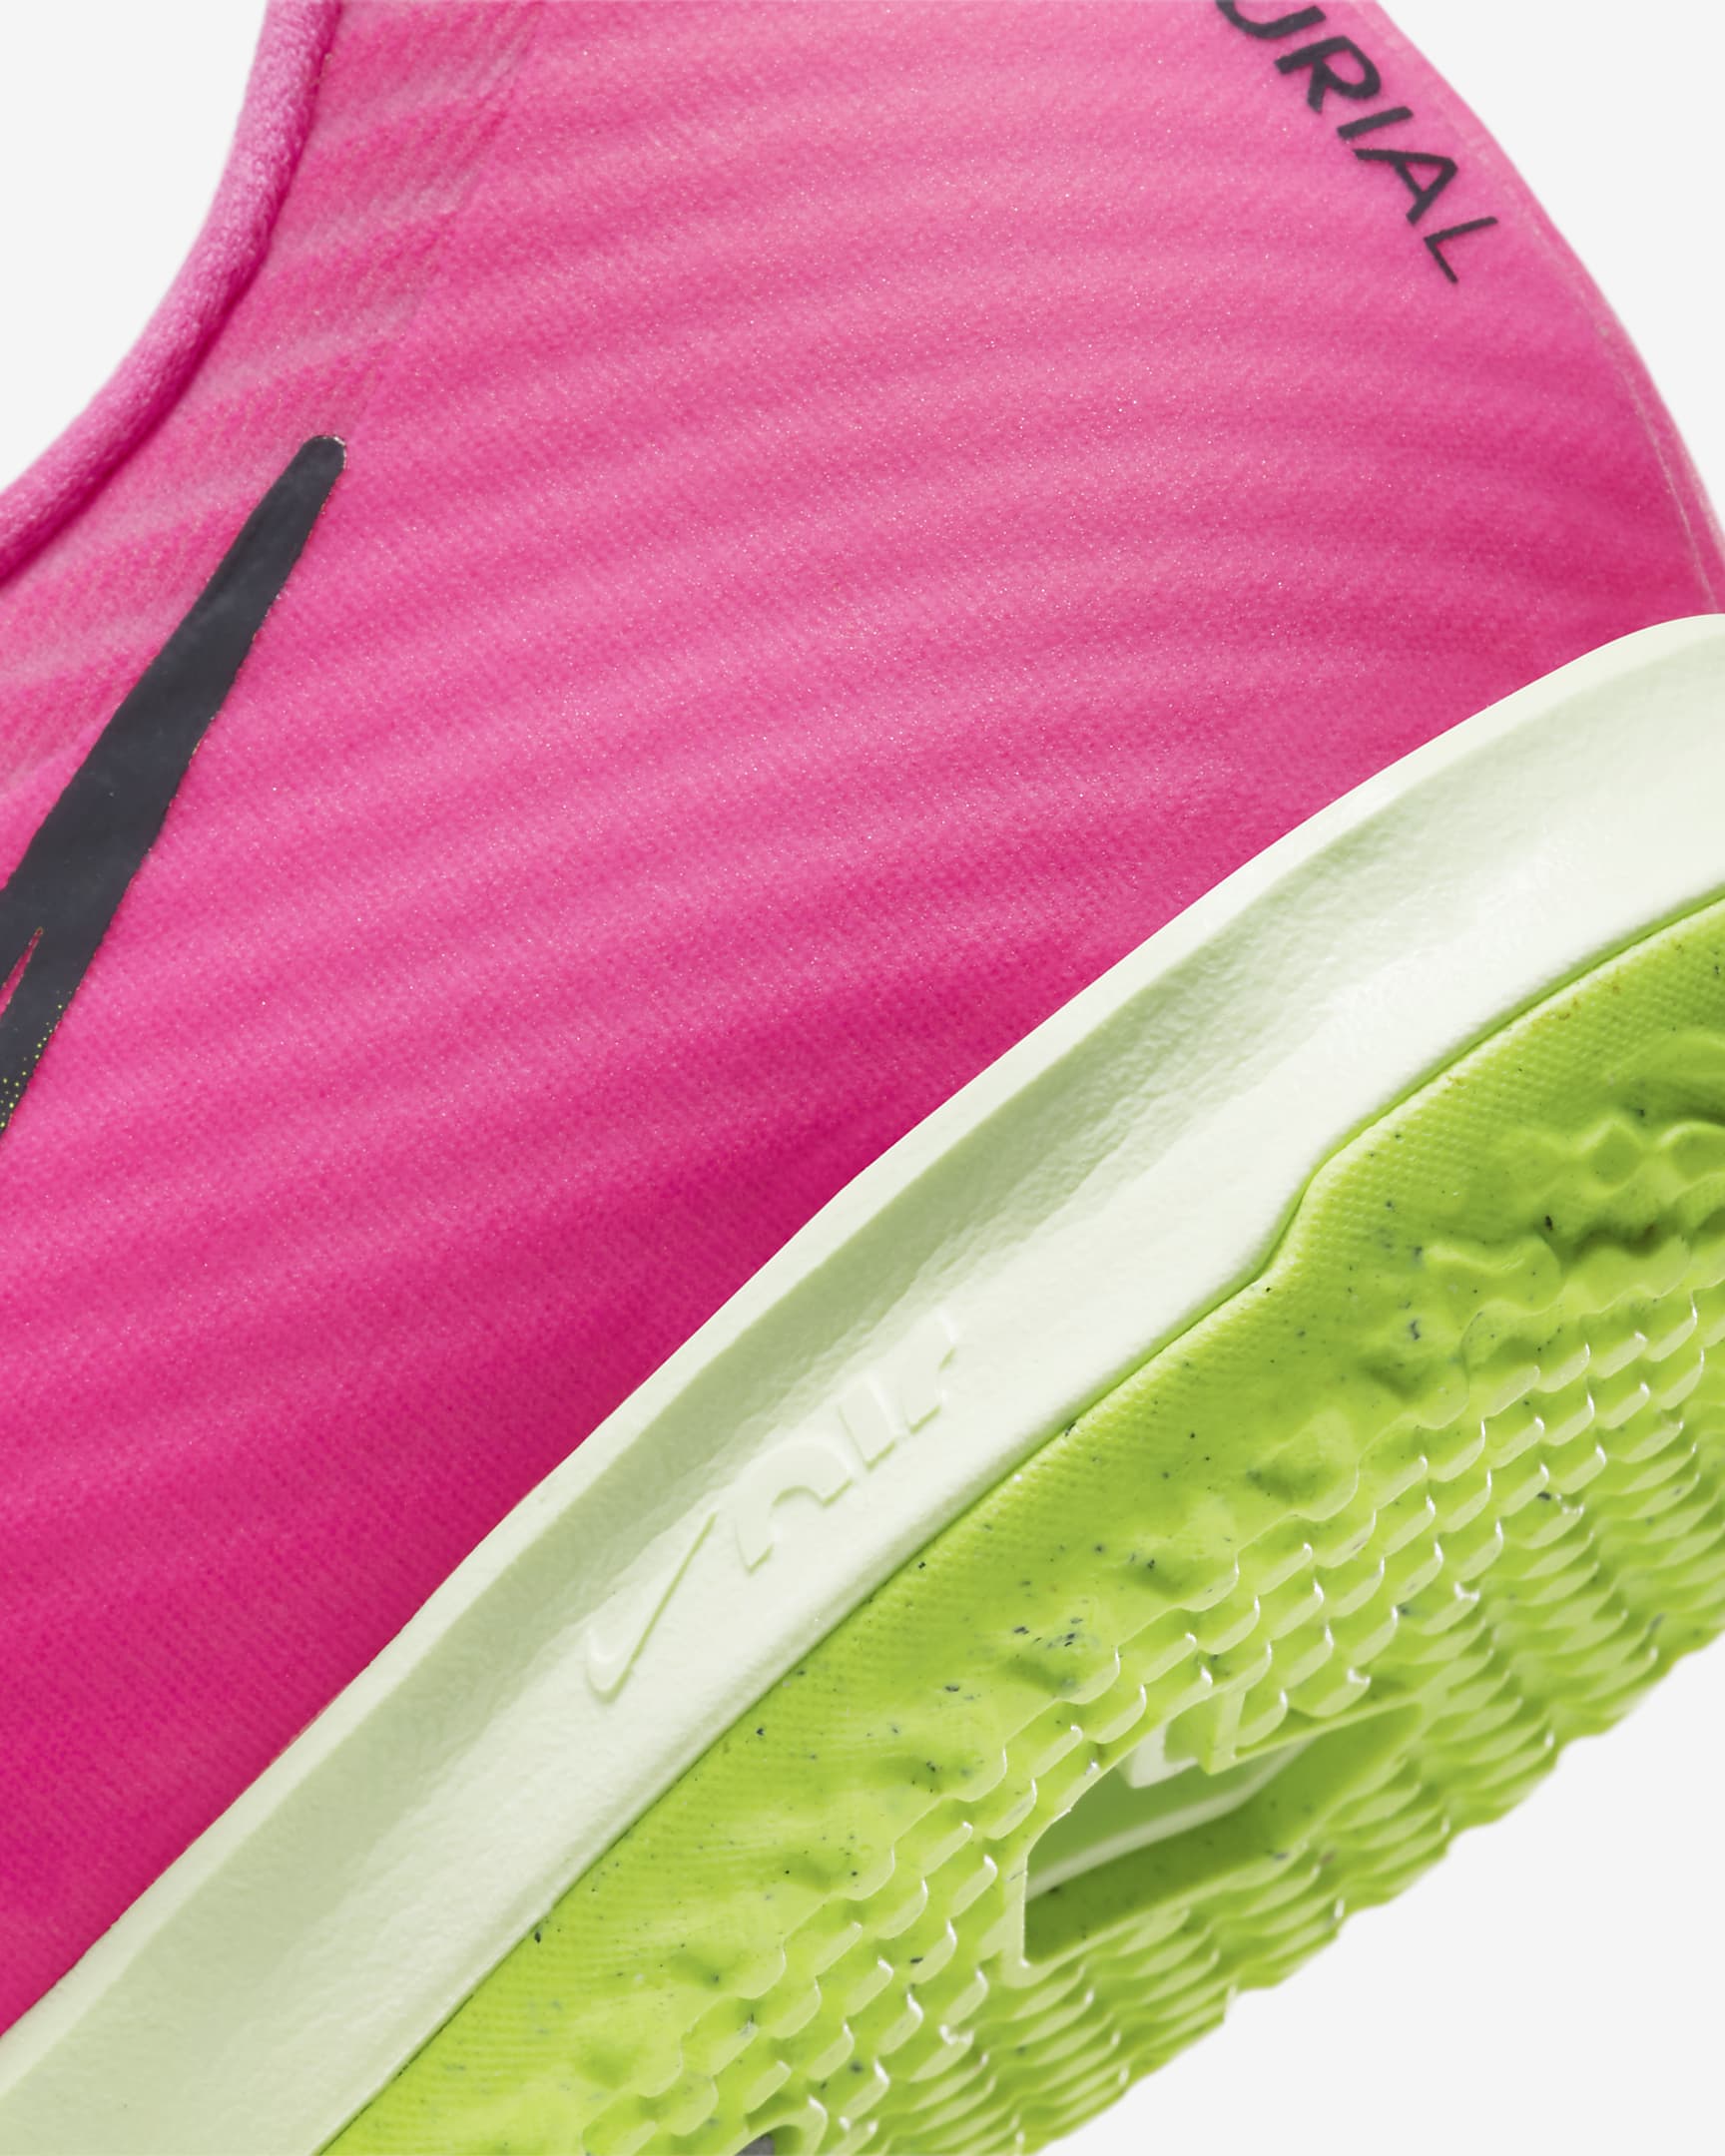 Calzado de fútbol de corte low para cancha cubierta Nike Mercurial ...